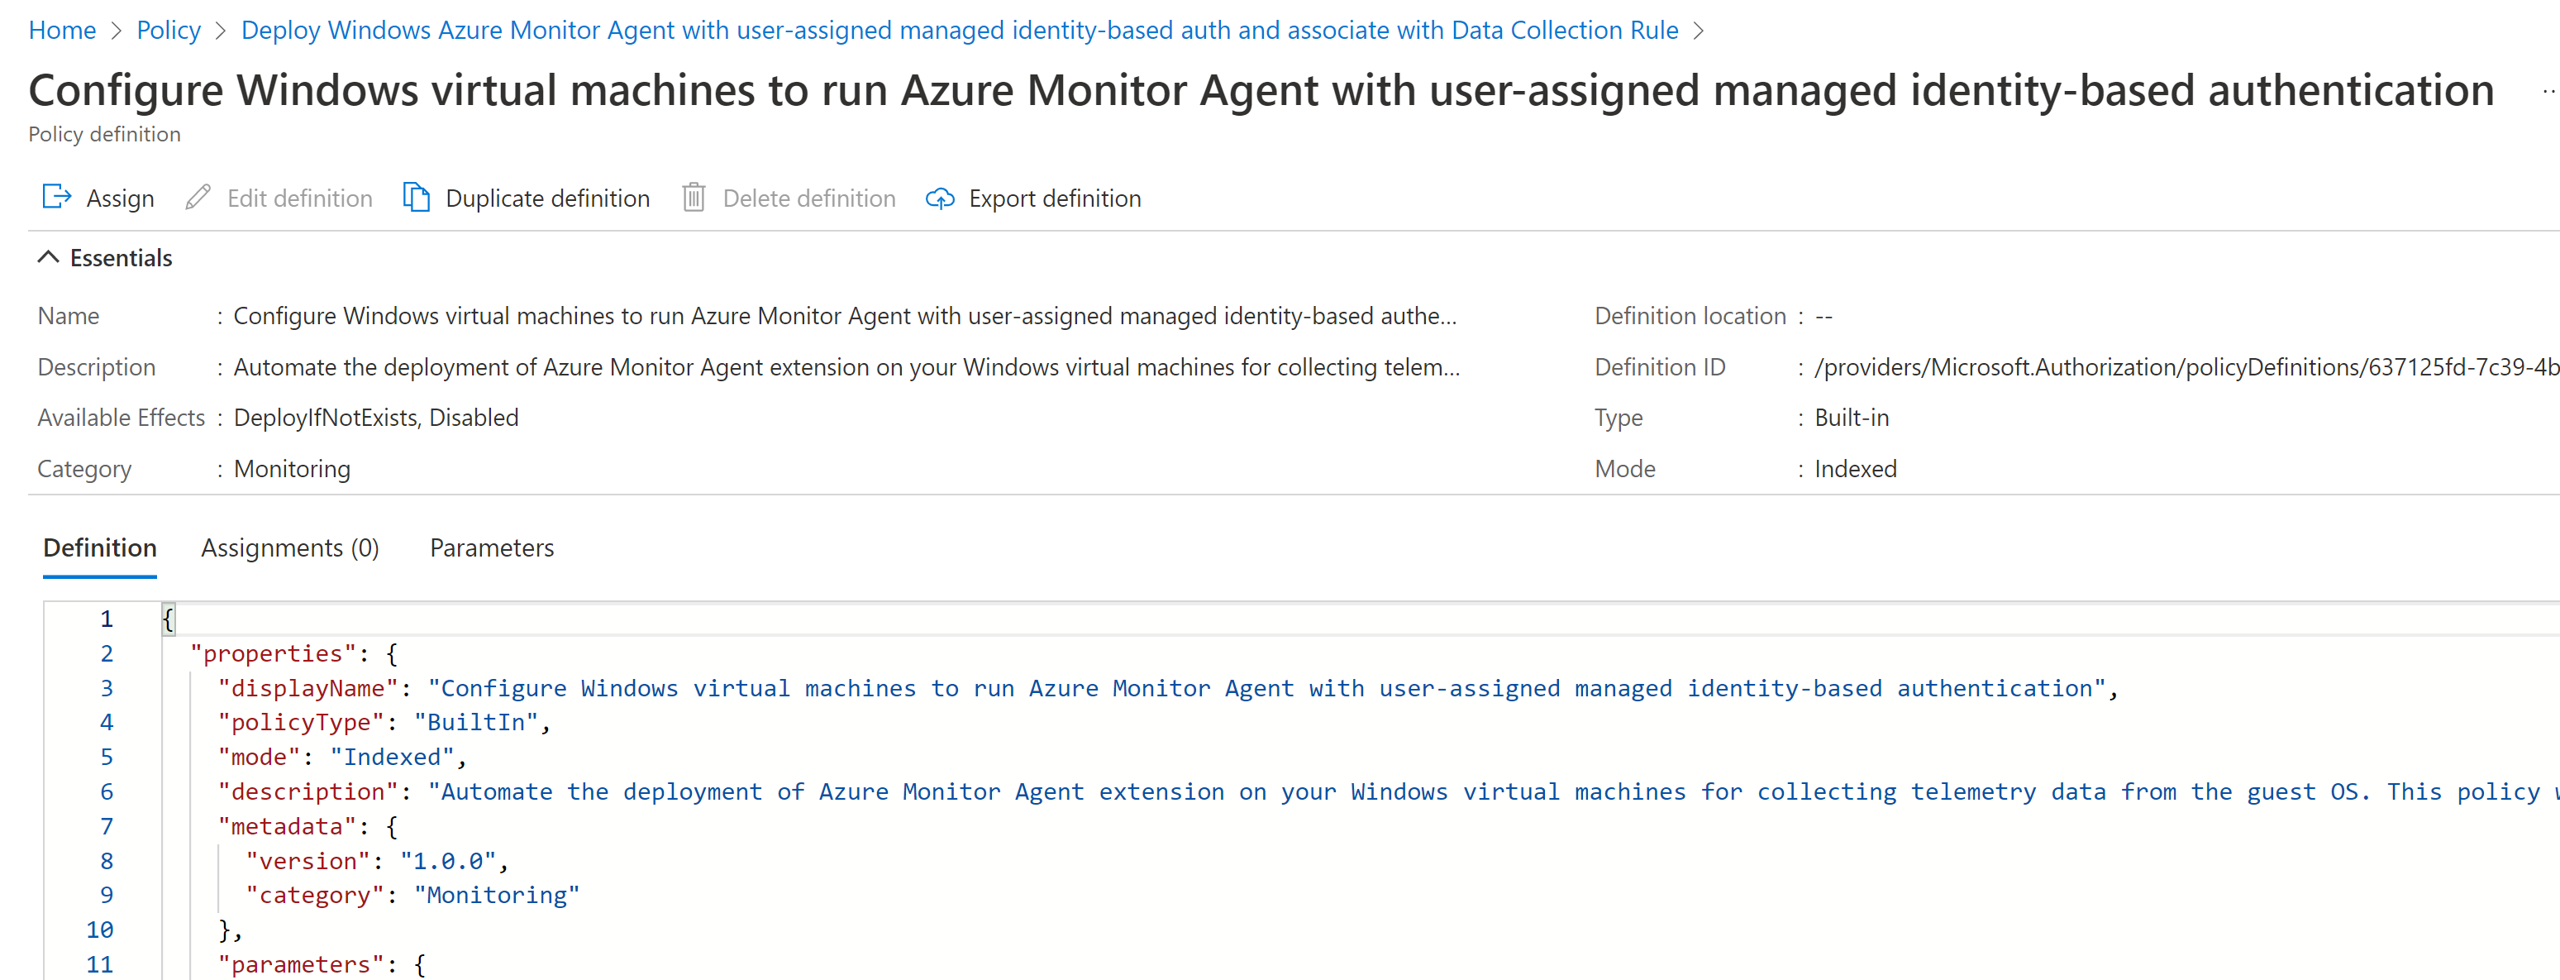 Screenshot parziale della pagina definizioni Criteri di Azure che mostra i criteri contenuti nell'iniziativa per la configurazione dell'agente di Monitoraggio di Azure.